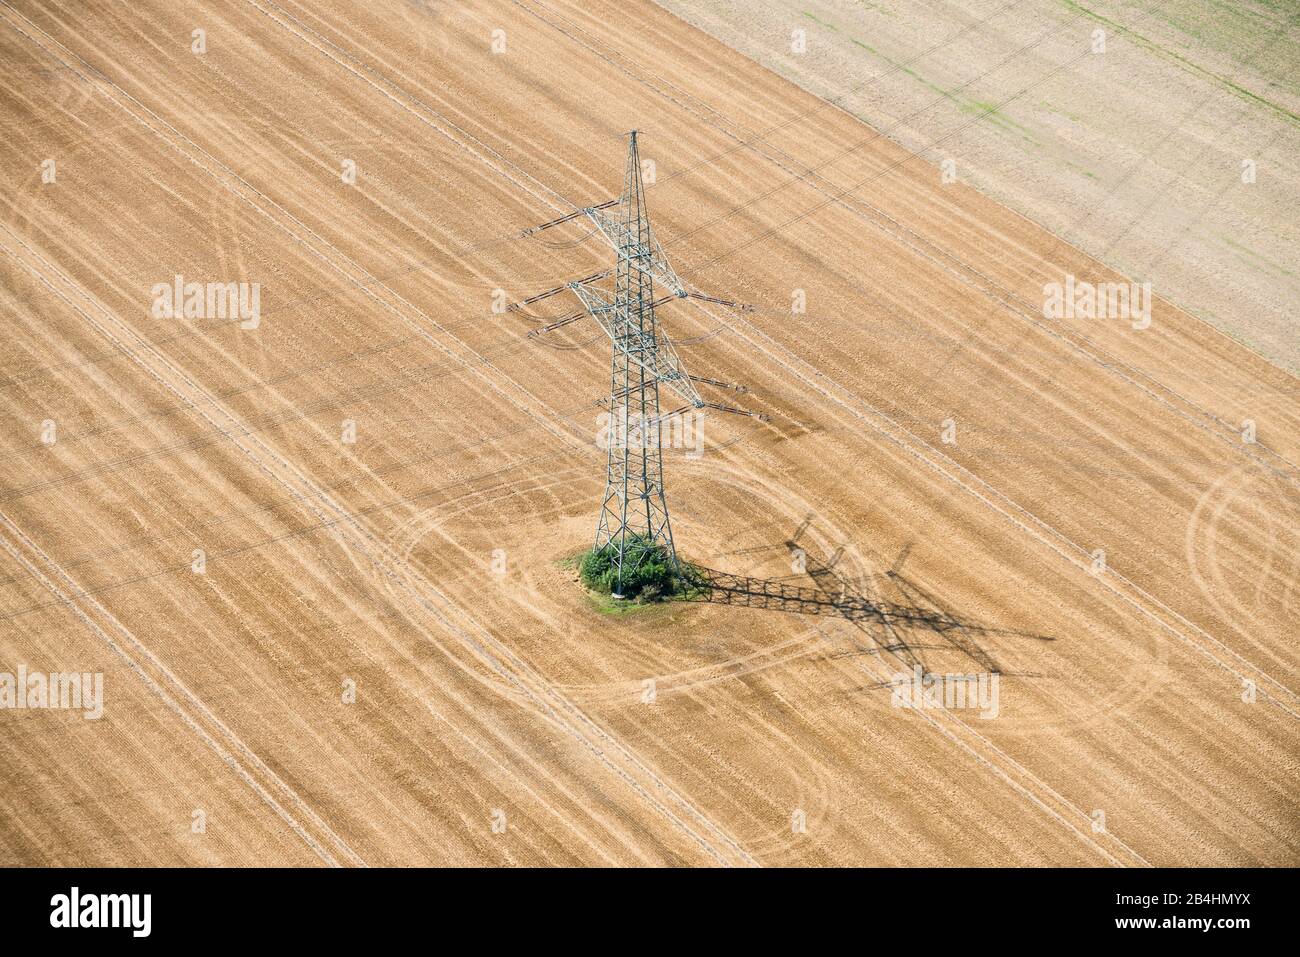 Luftaufnahme von einem Strommast auf abgeerntetem Getreidefeld Foto de stock